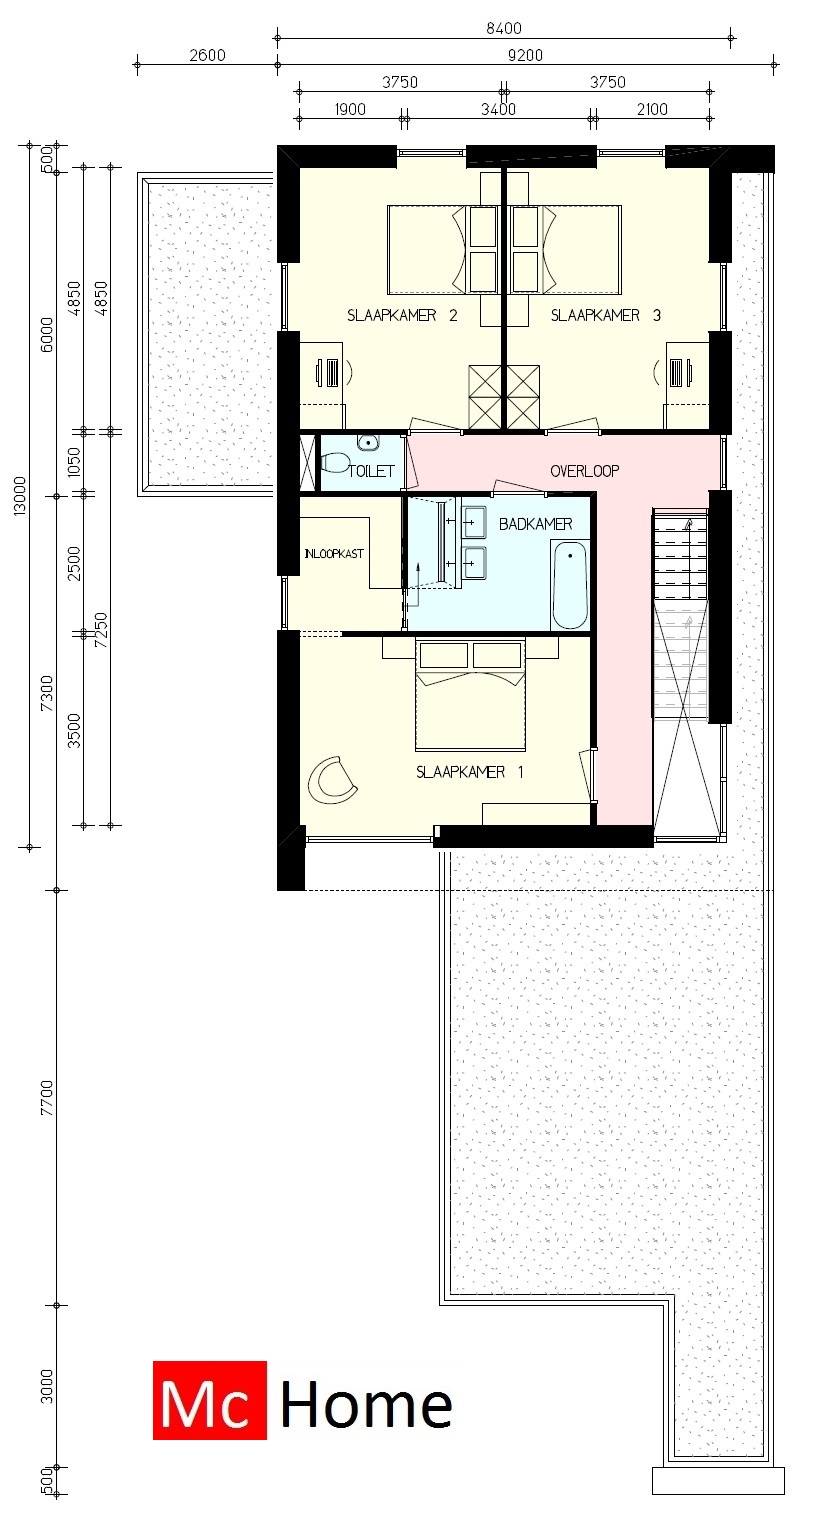 Mooie strakke moderne woning in kubistische bouwstijl met veel ramen en glas kaders boeien en randen Mc-Home.nl M143 V0